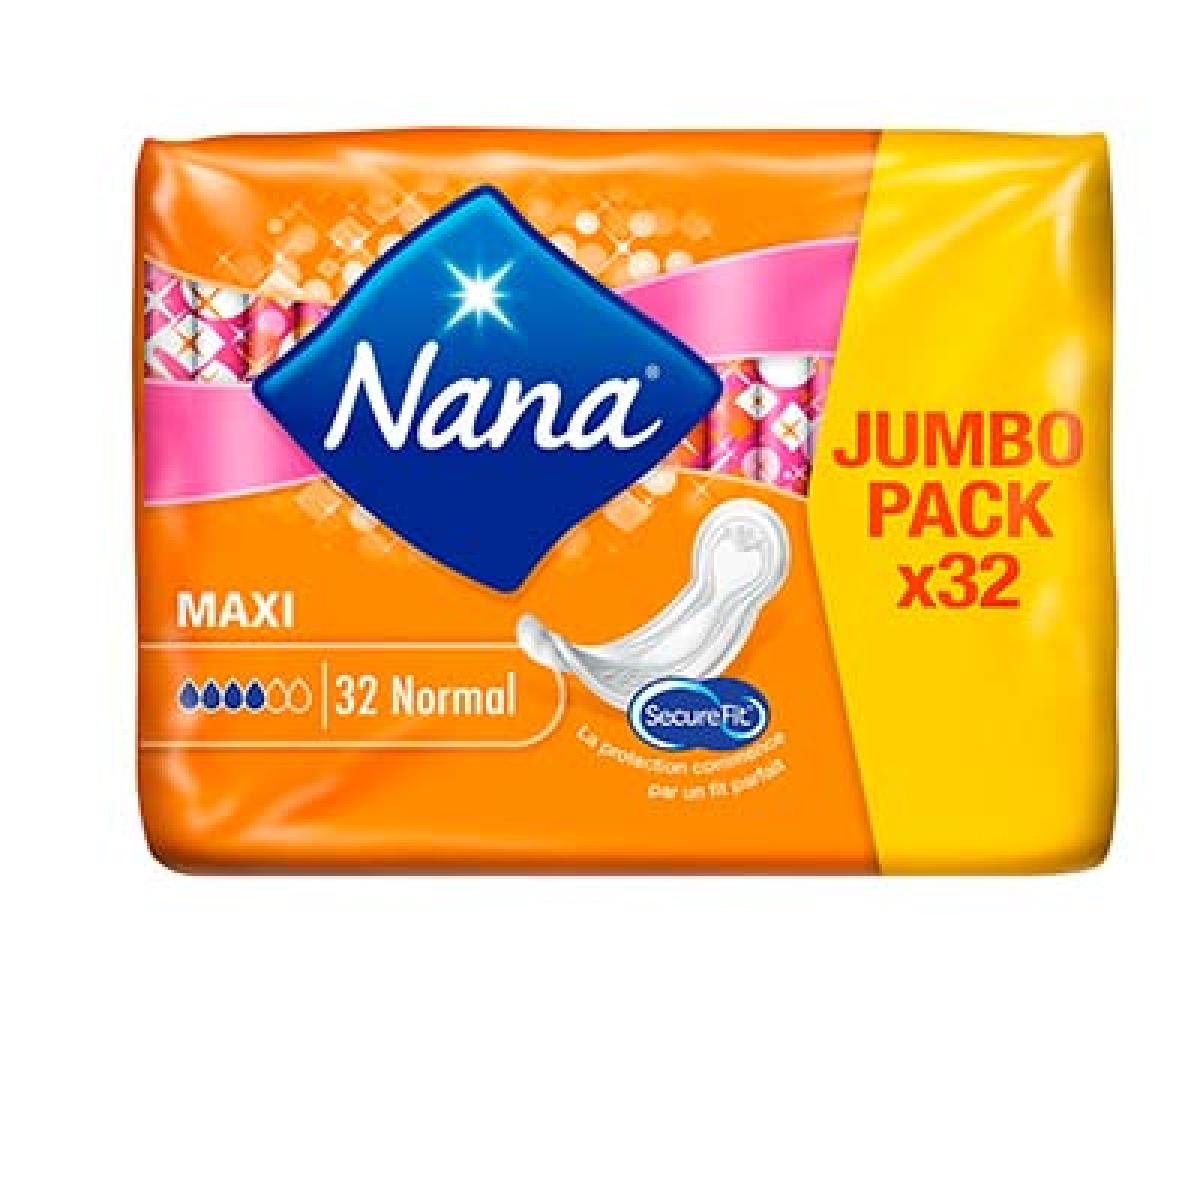 S.NANA MAXI NORMAL X32